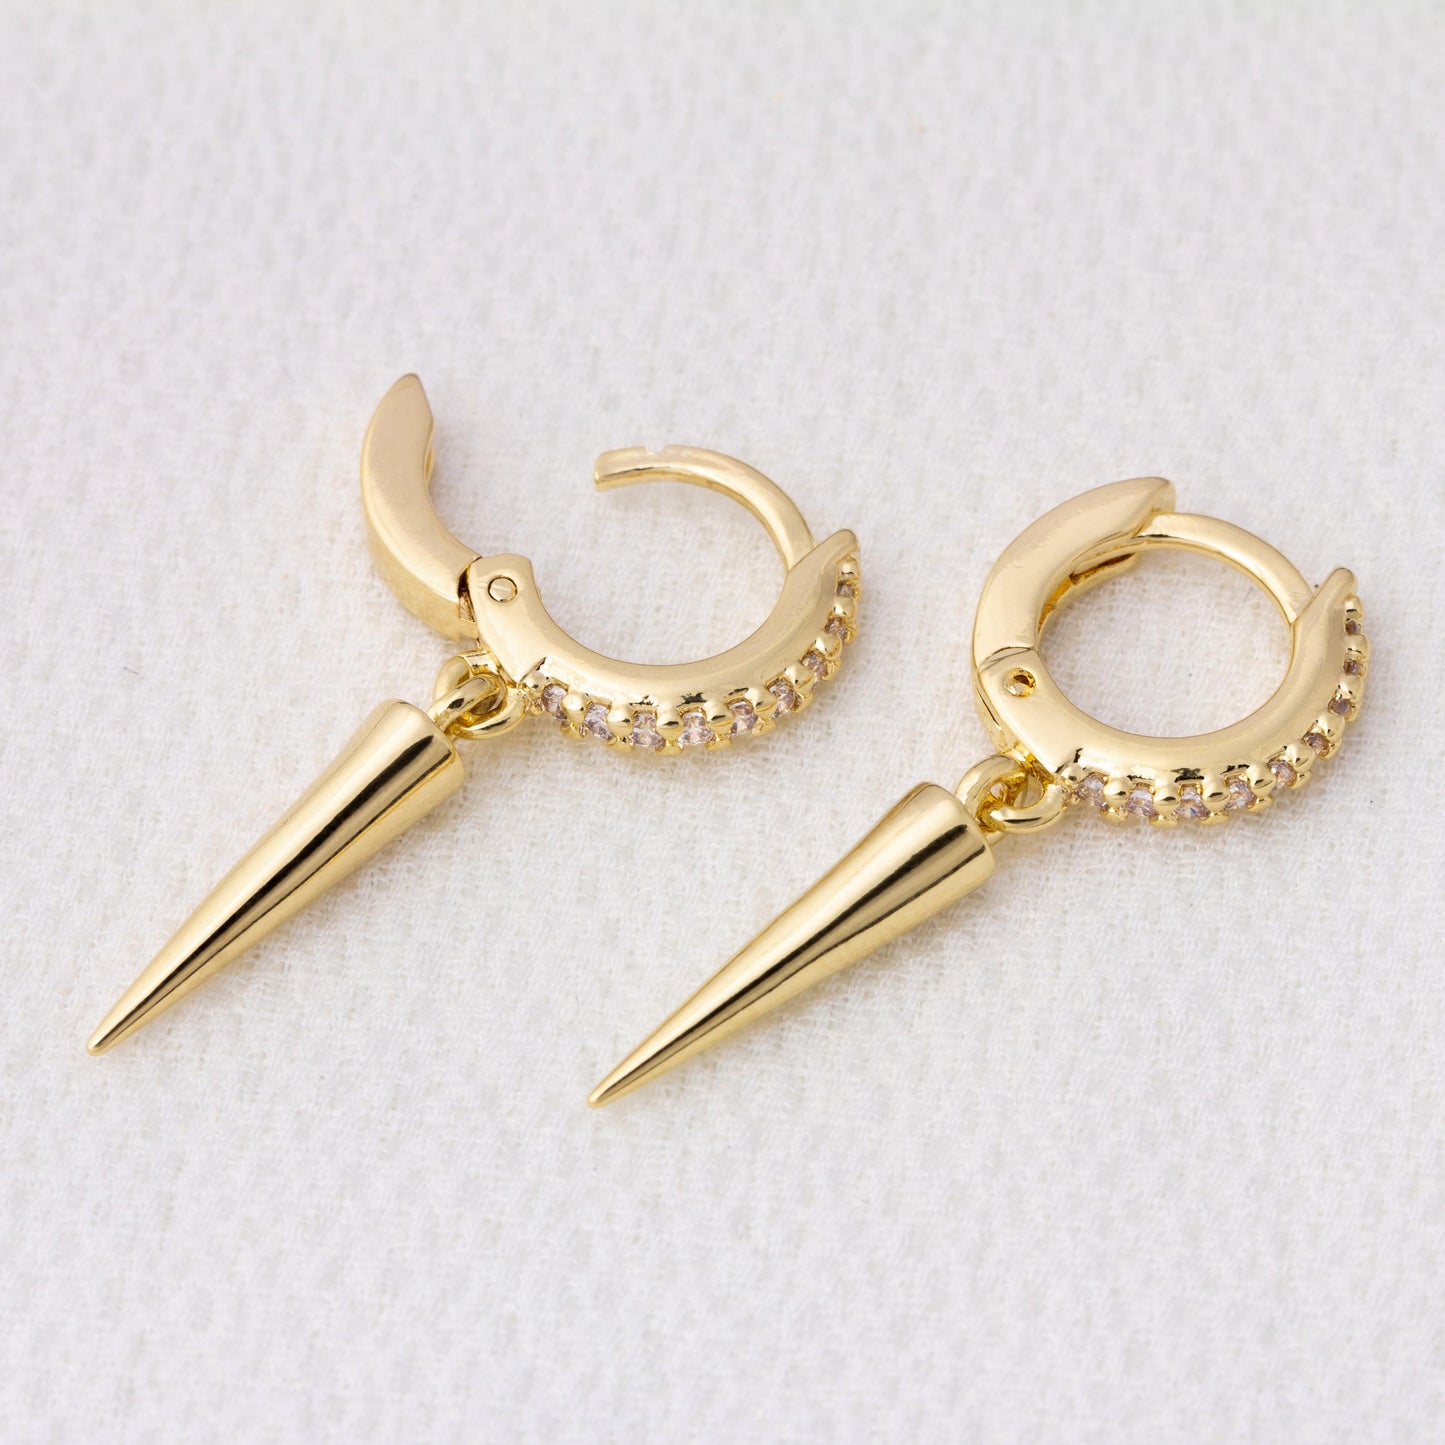 18k Gold Filled Cubic Zircon Hoop Earrings With Spike Drop